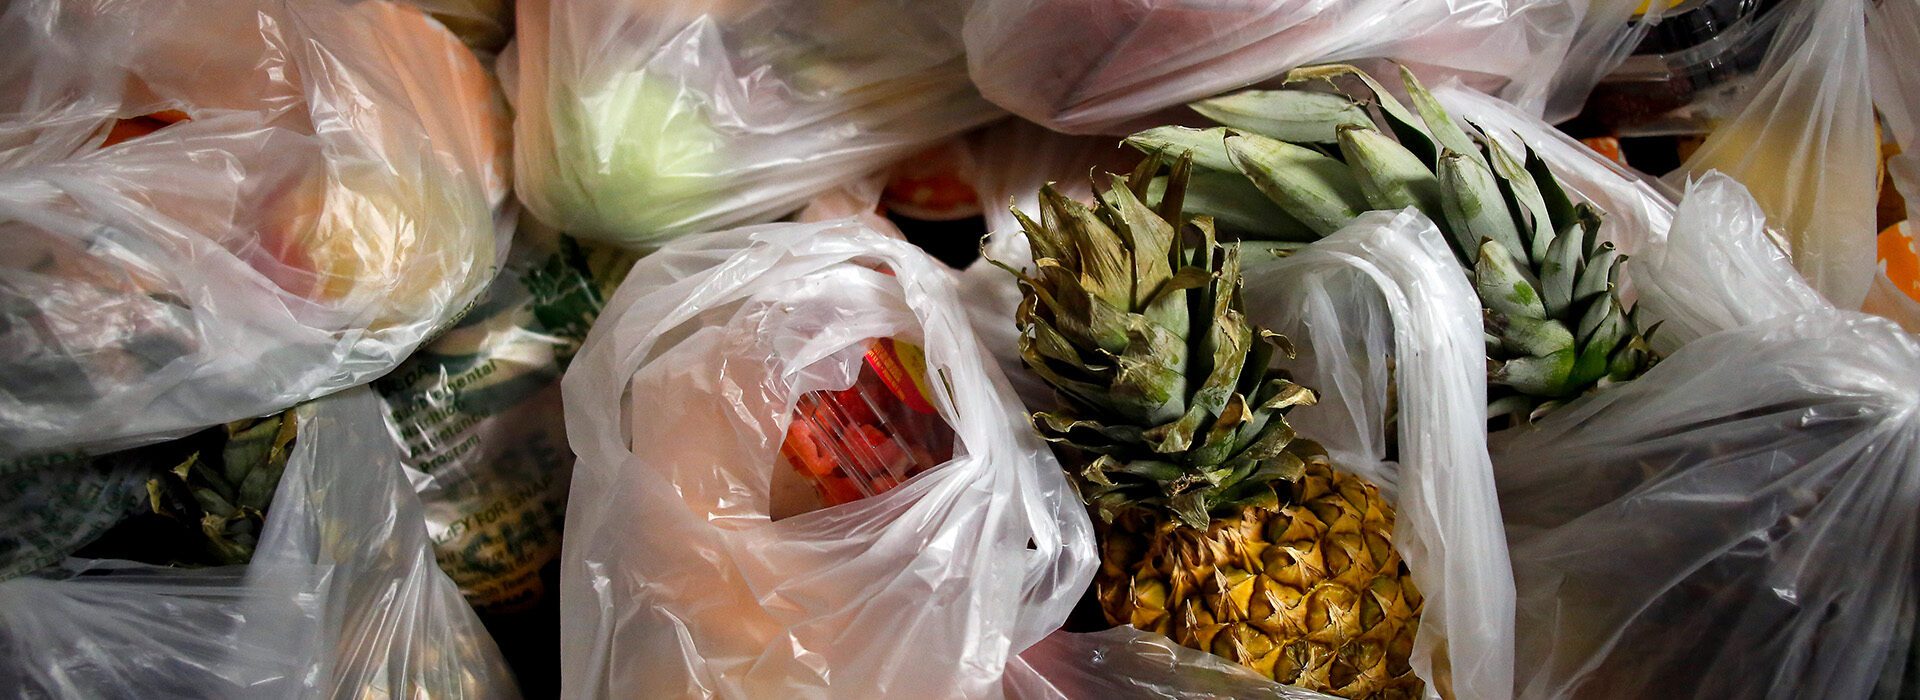 Mis 5 alternativas al plástico para guardar tu comida de forma segura